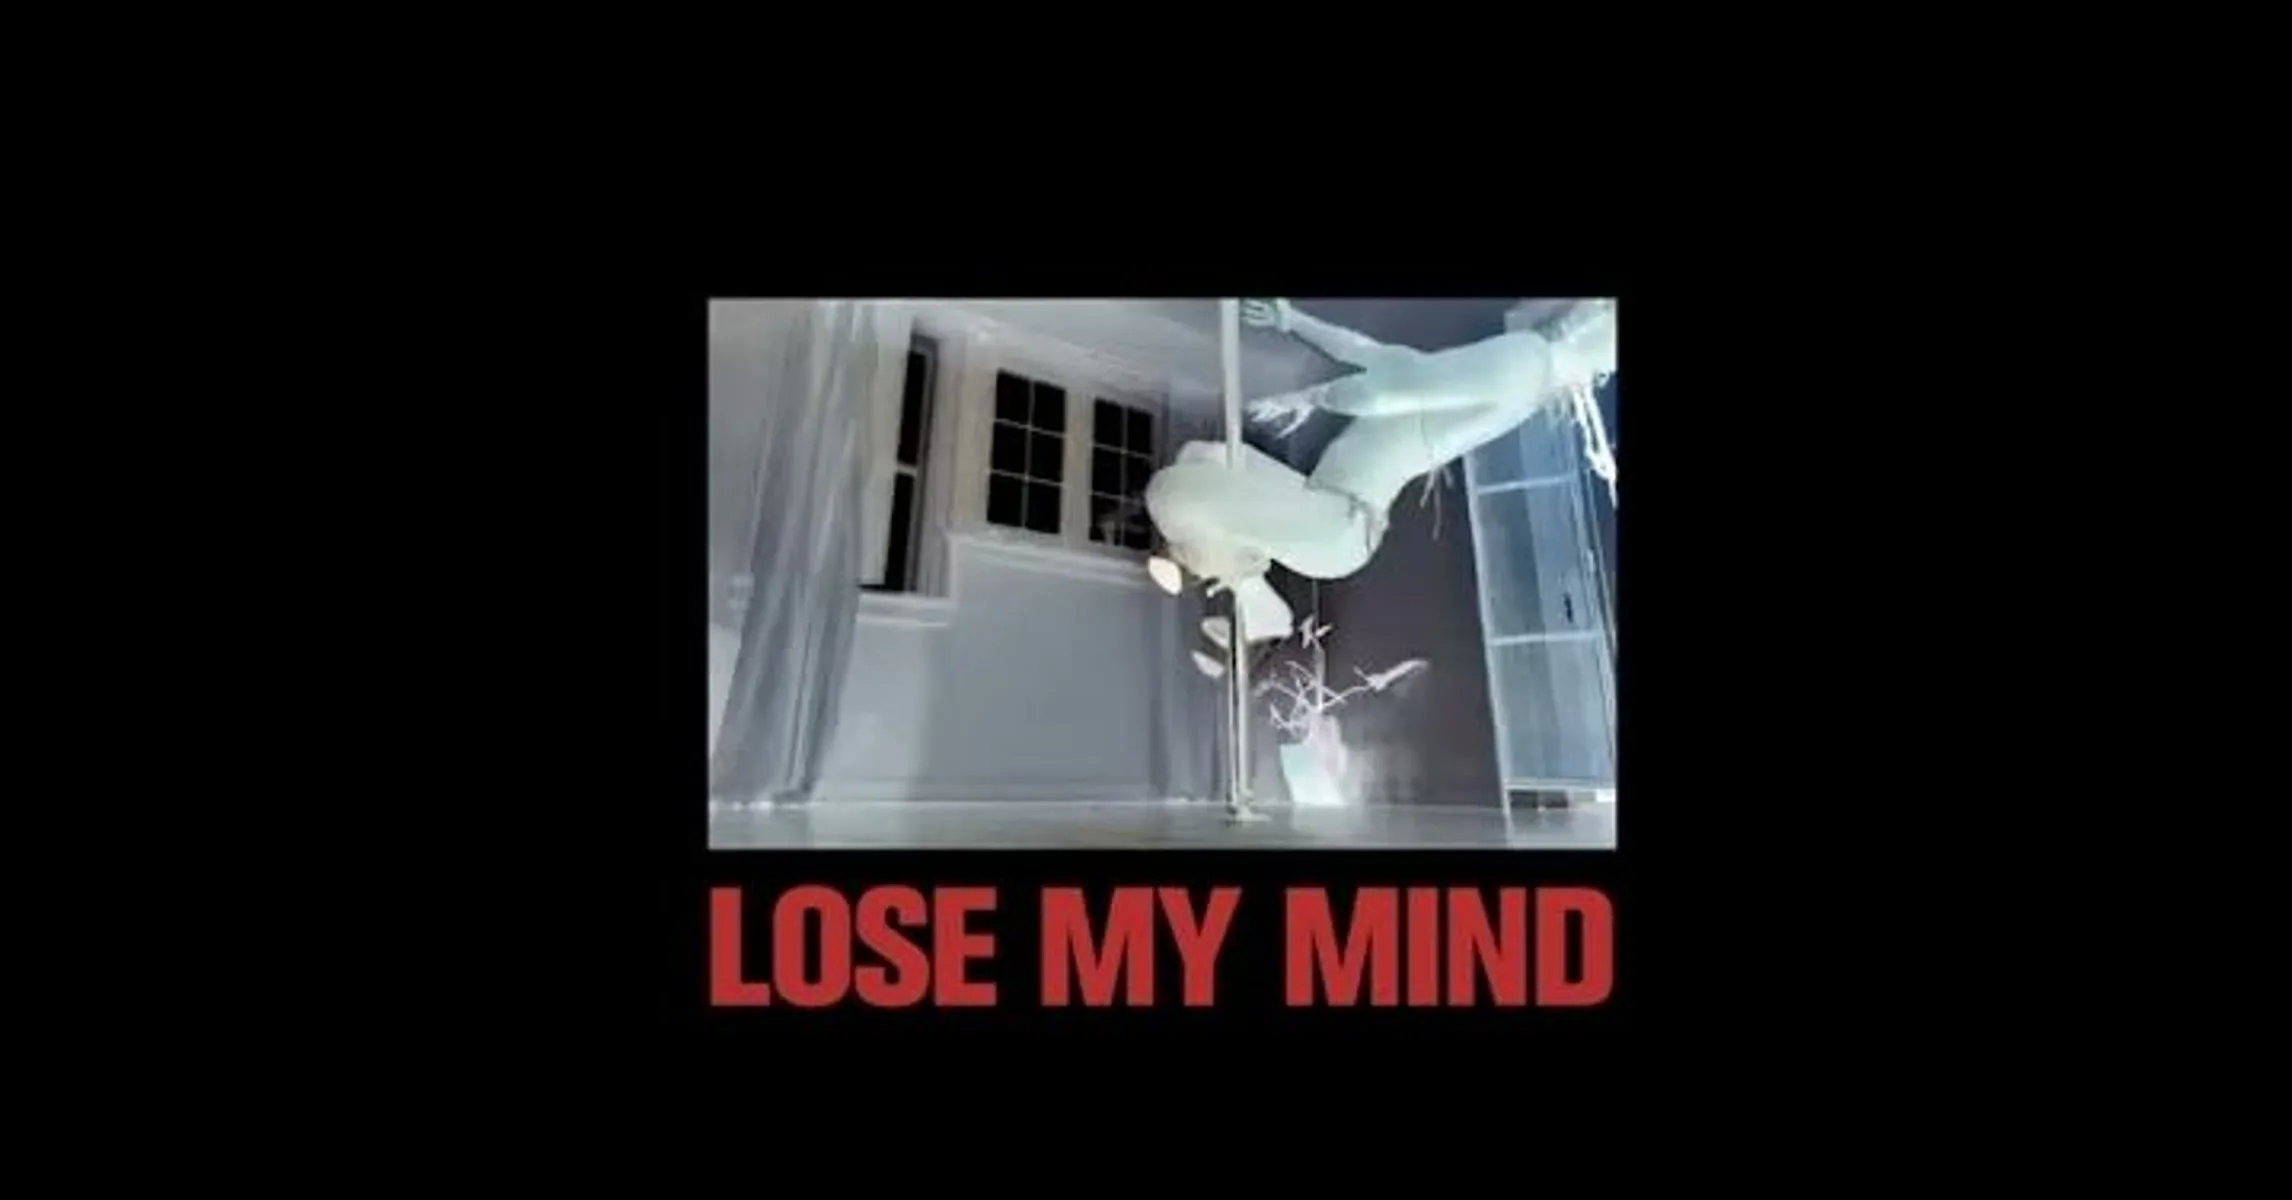 PartyNextDoor - Lose my mind